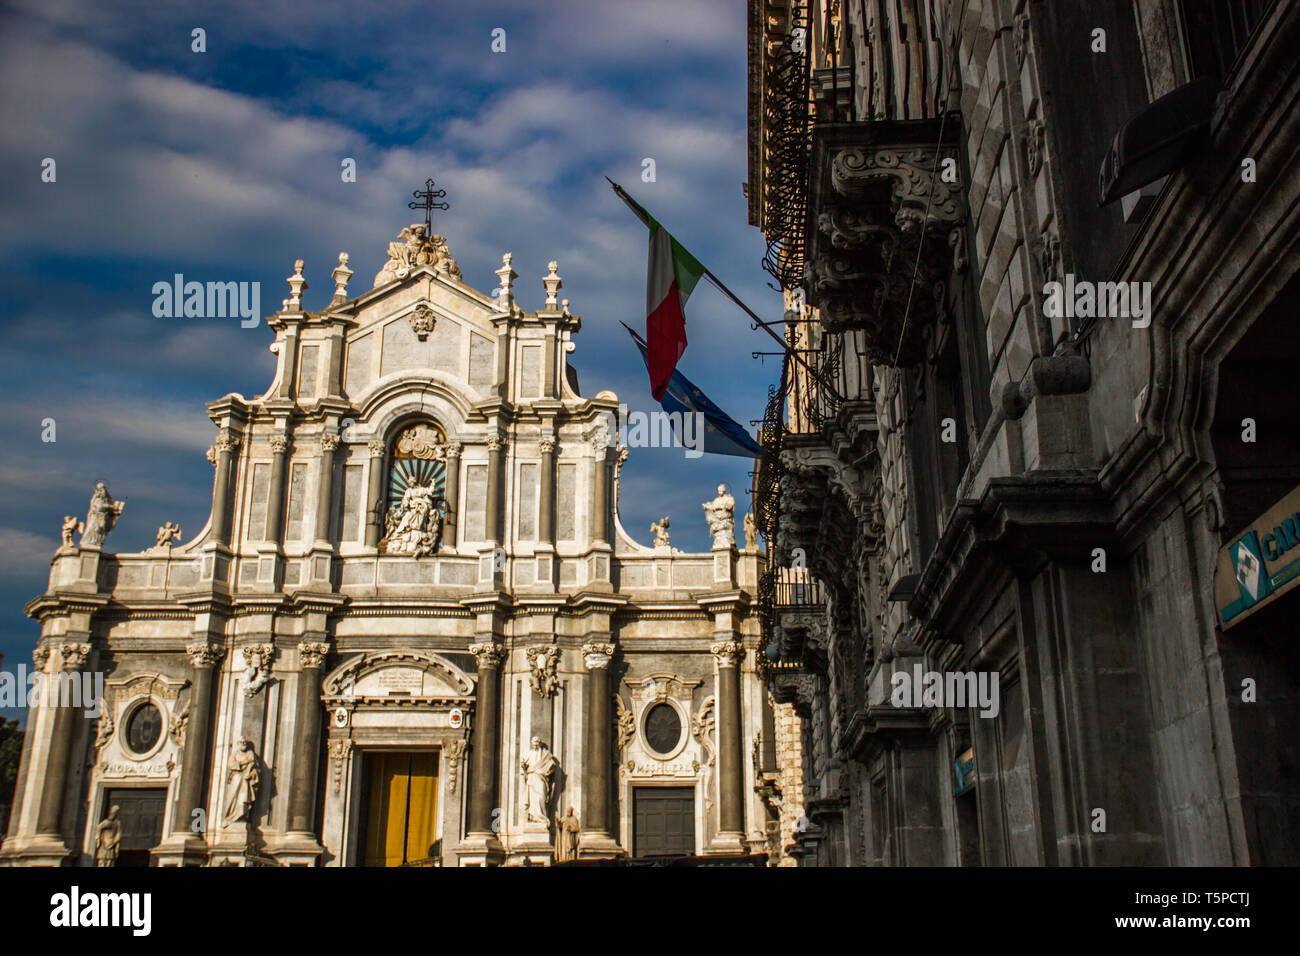 Die Kathedrale von Catania Frontansicht mit barocken Architektur Gebäude und Kuppel Stockfoto